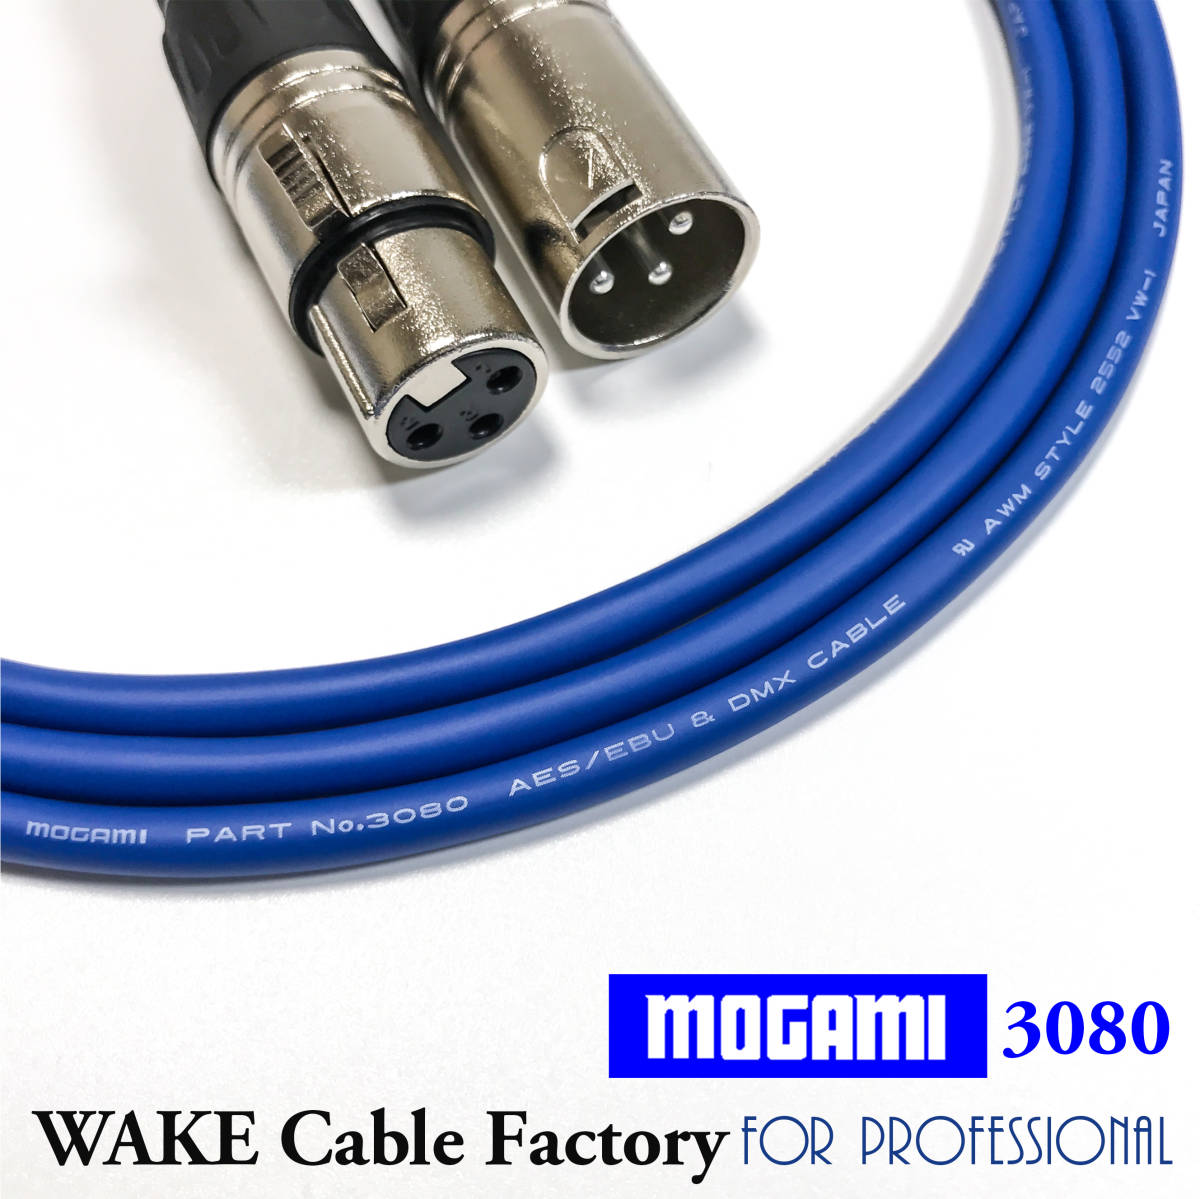  super high kospa!MOGAMI3080*AES/EBU digital cable 1.5m*110Ω /DMX/ low electrostatic capacity / analogue also OK!